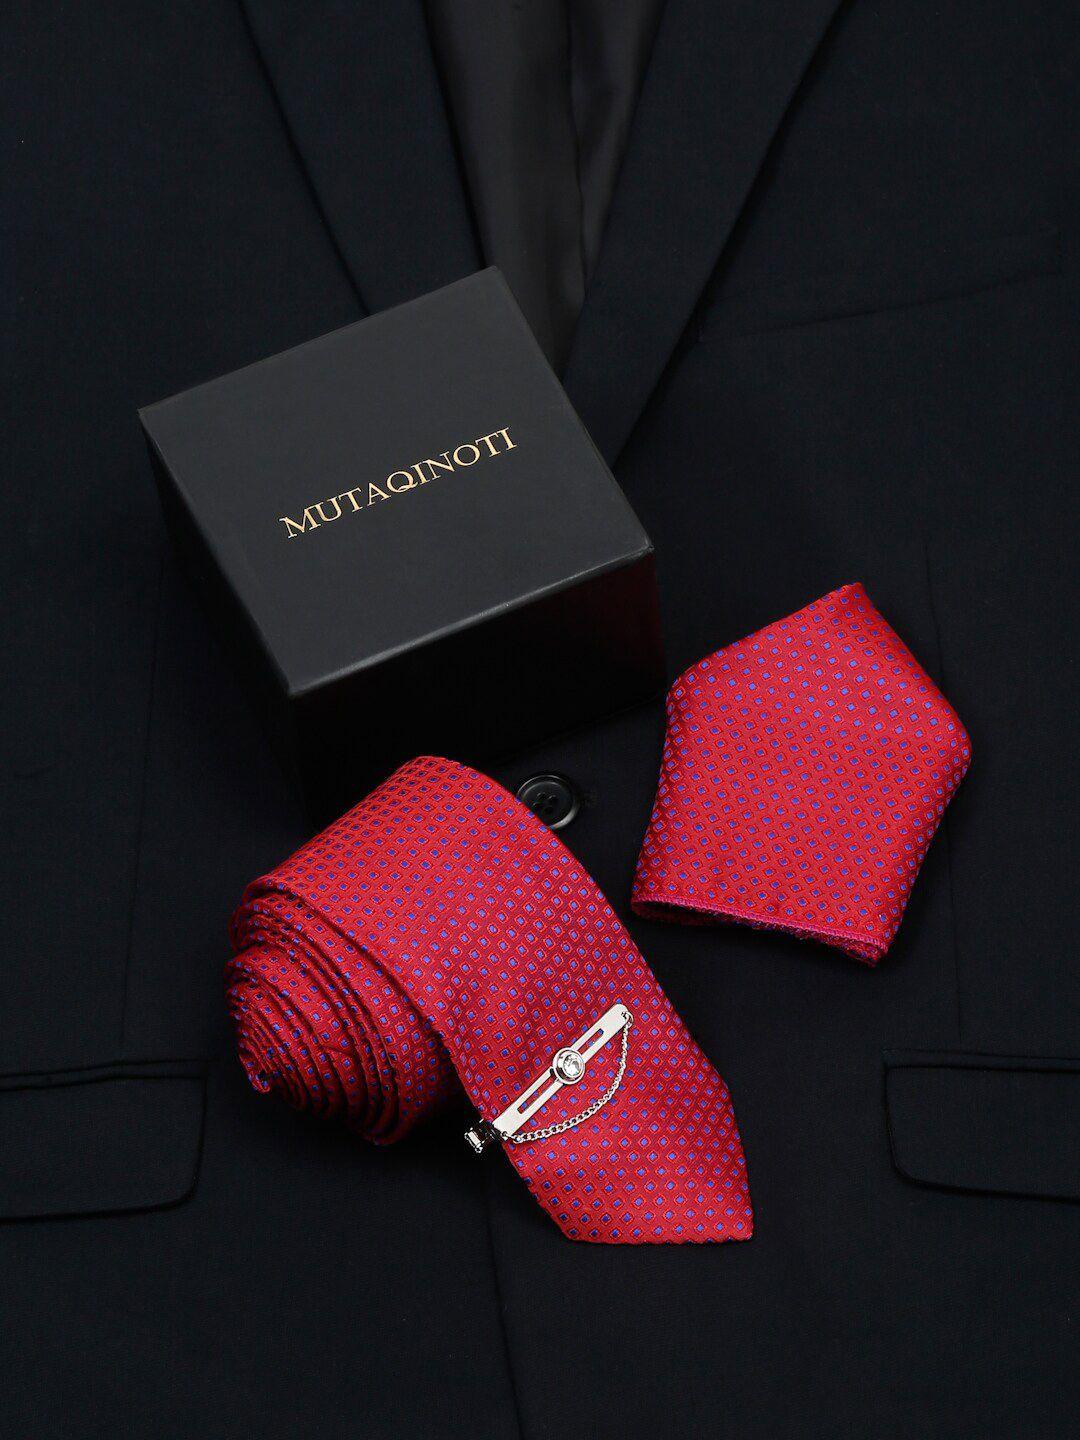 mutaqinoti printed skinny tie with tiepin & pocket square